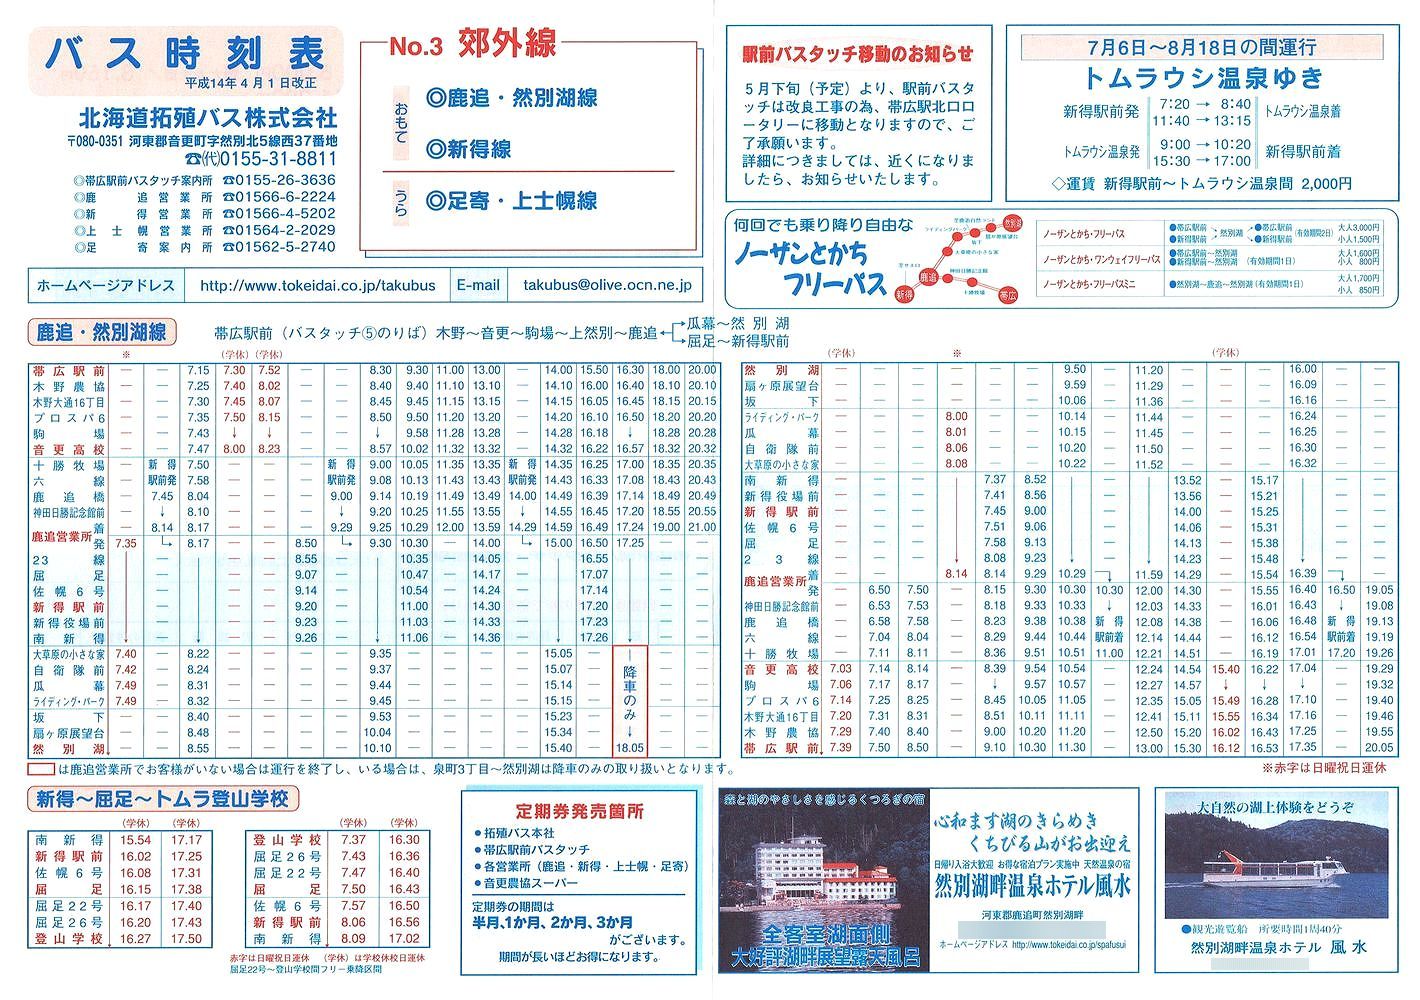 2002-04-01改正_北海道拓殖バス_時刻表３表面